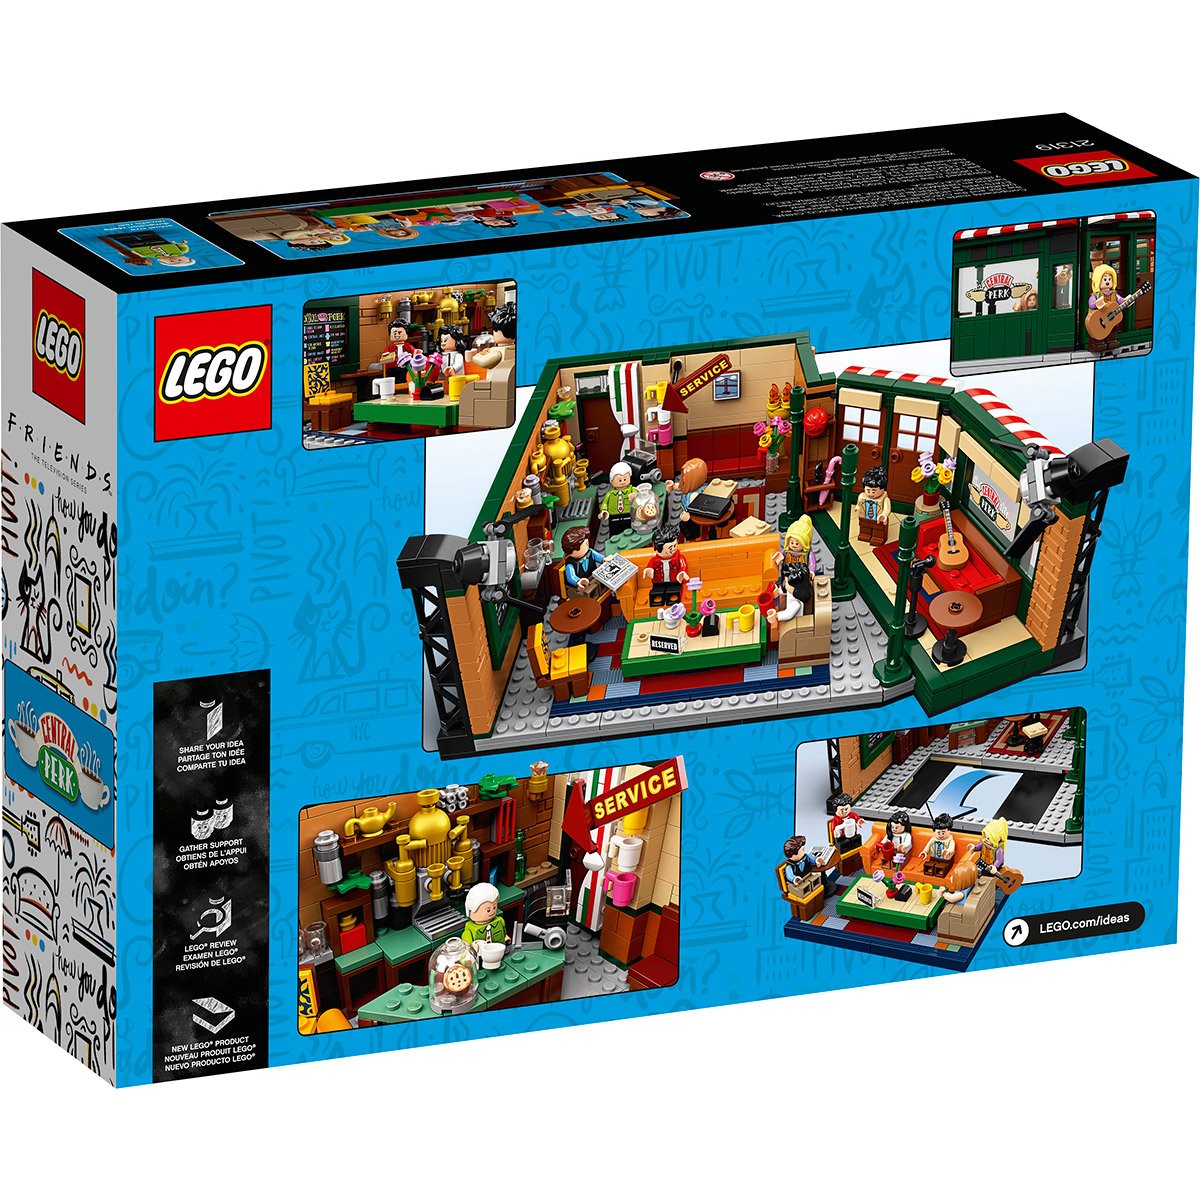 Lego va sortir un kit inspiré de la série Friends